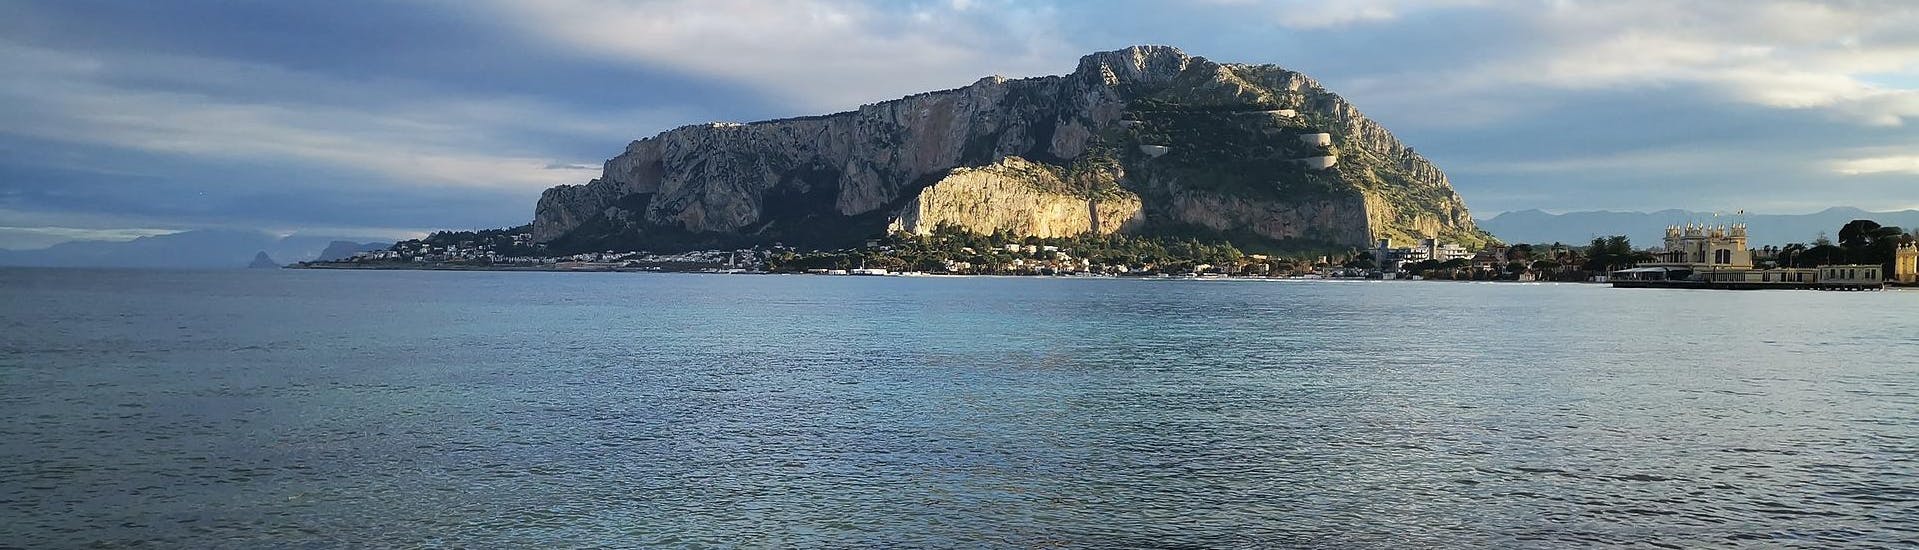 Strand von Mondello und ein Berg im Hintergrund in Palermo.